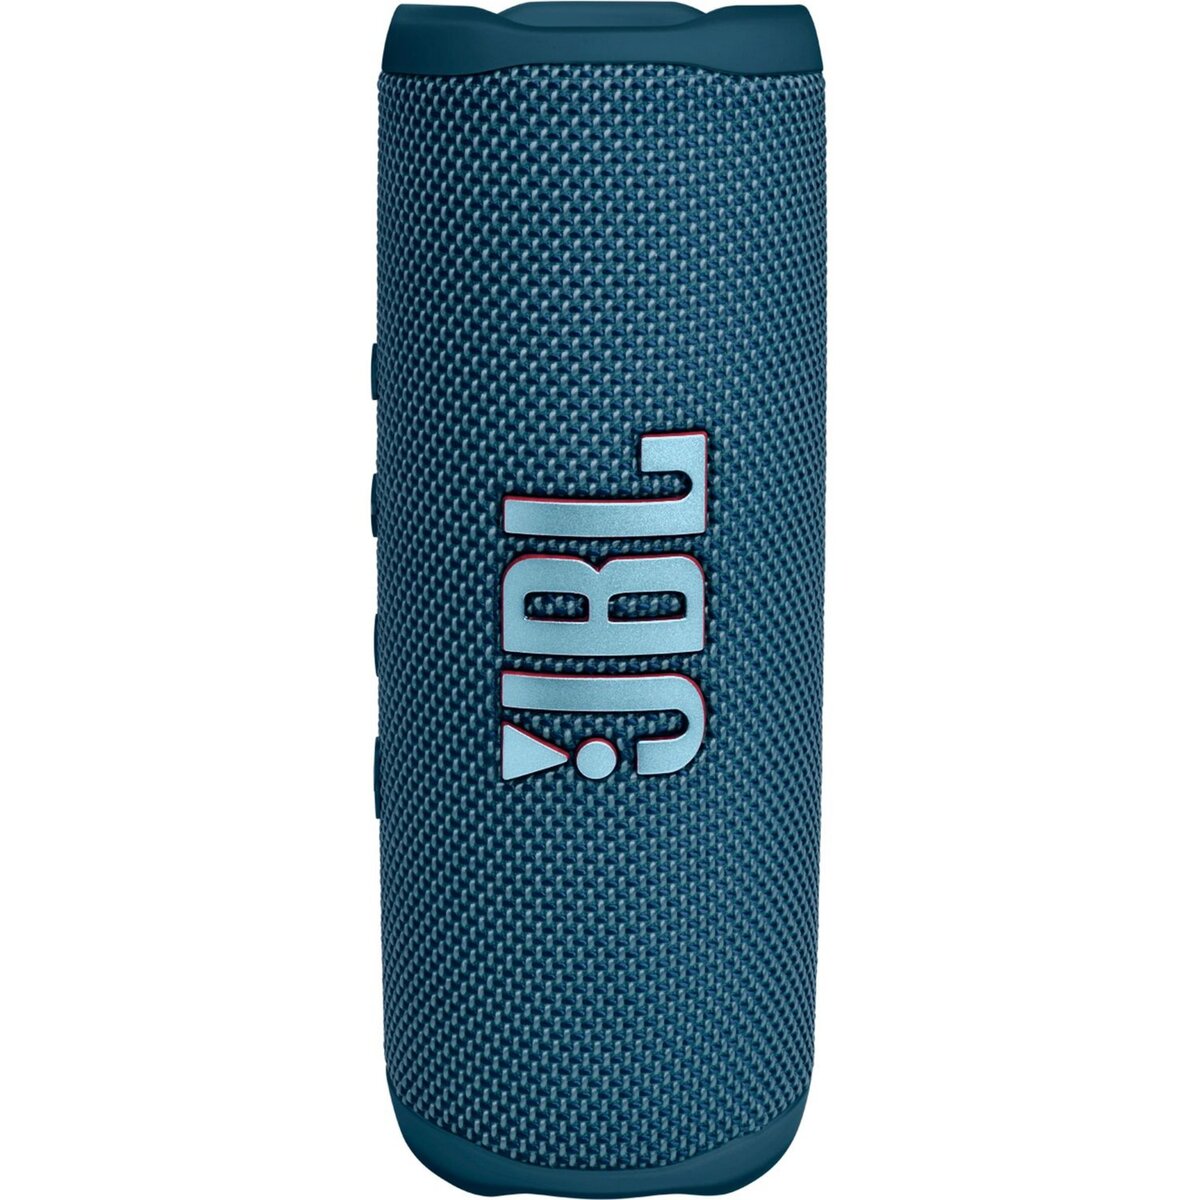 Enceinte portable Flip 6 - Bleu